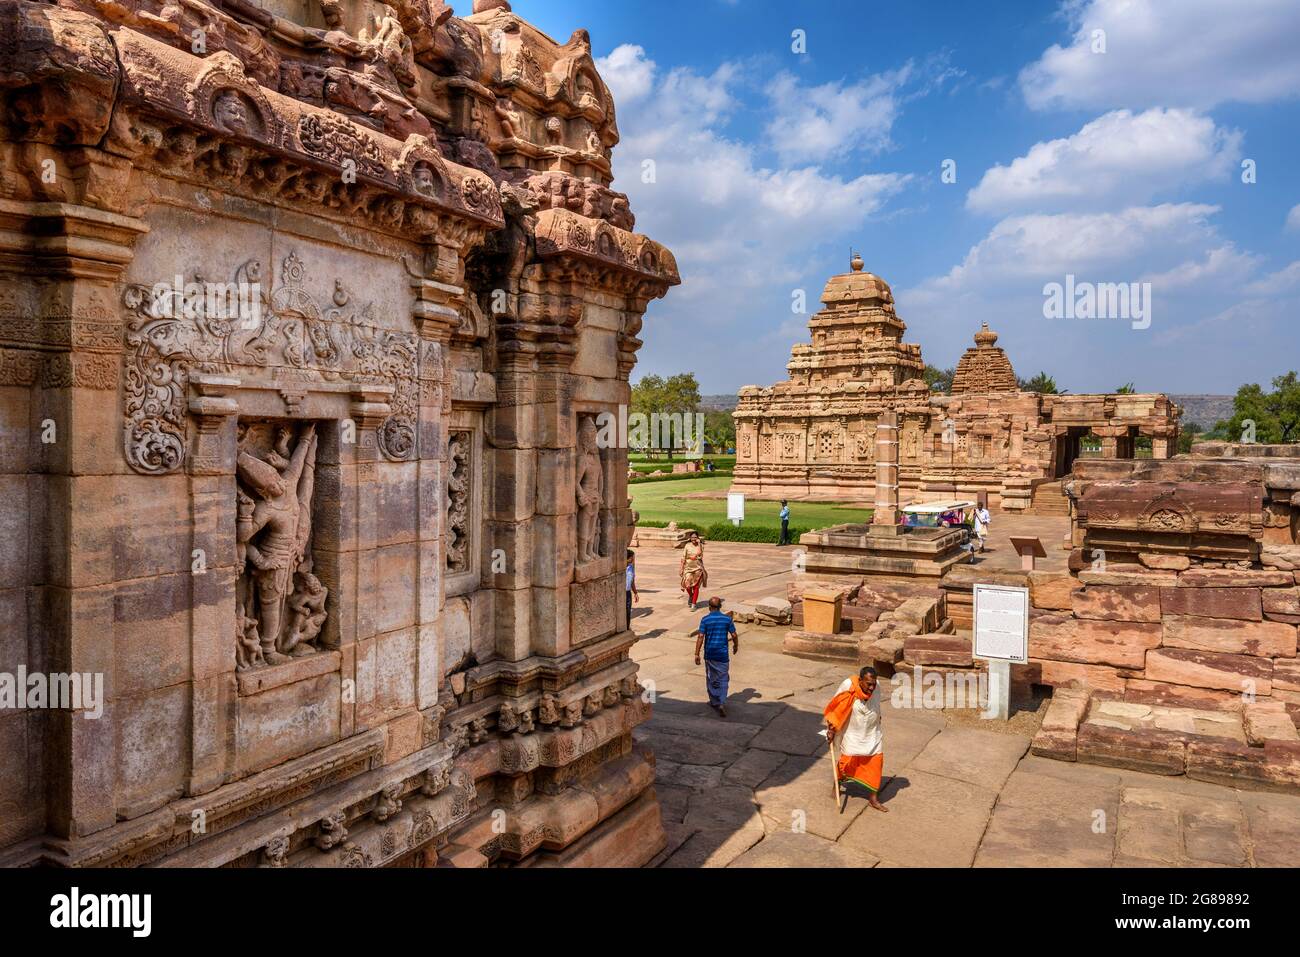 Pattadakal, Karnataka, India - 11 de enero de 2020 : El templo de Virupaksha en el complejo del templo de Pattadakal, que data del siglo 7th-8th, el Chaluky temprano Foto de stock